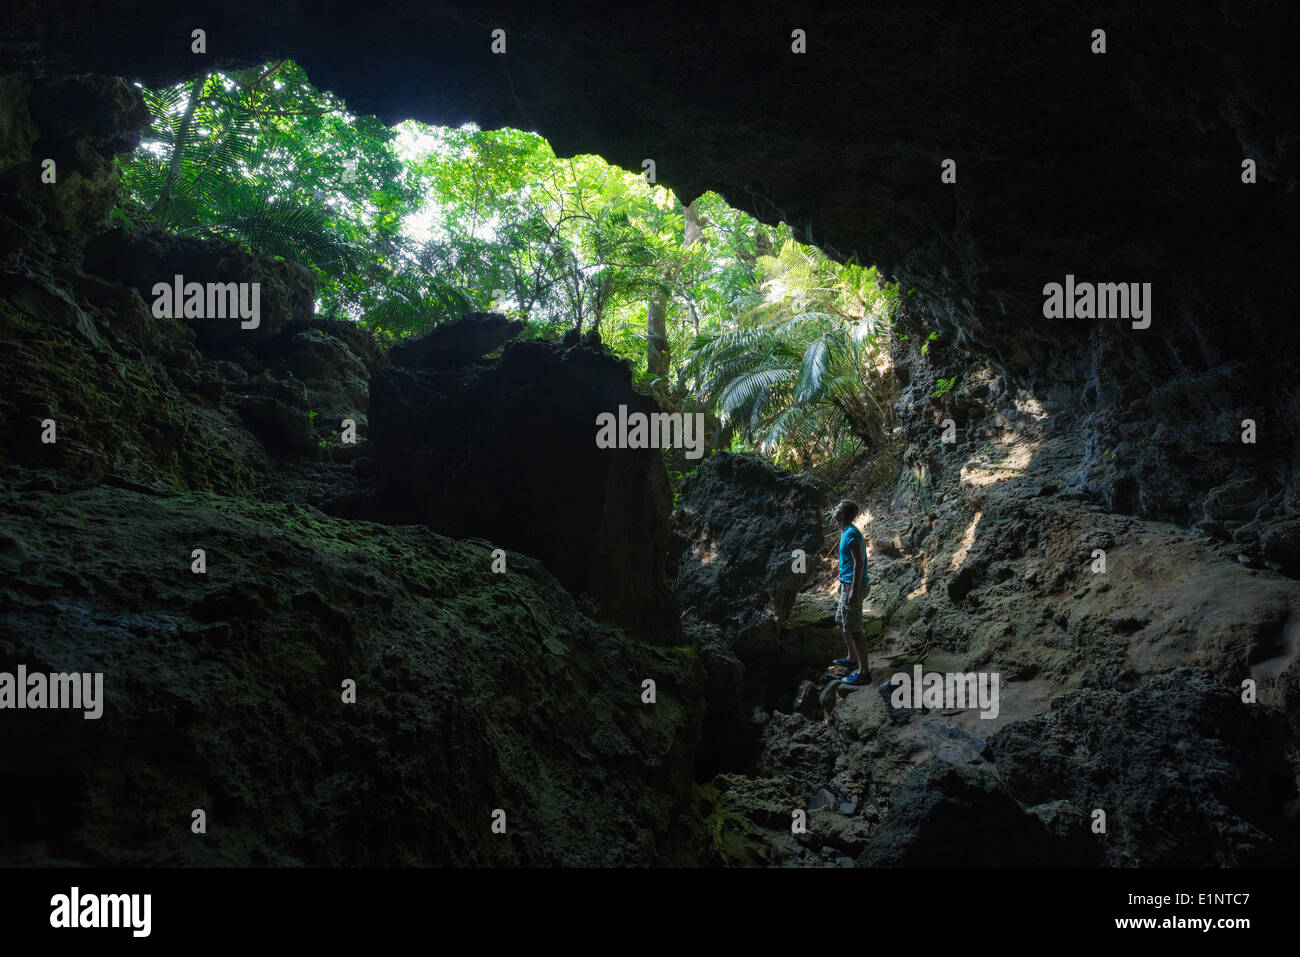 L'exploration de l'homme grotte de calcaire de l'immense au plus profond de la forêt tropicale intacte de l'île d'Iriomote, Okinawa, Japon tropical Banque D'Images